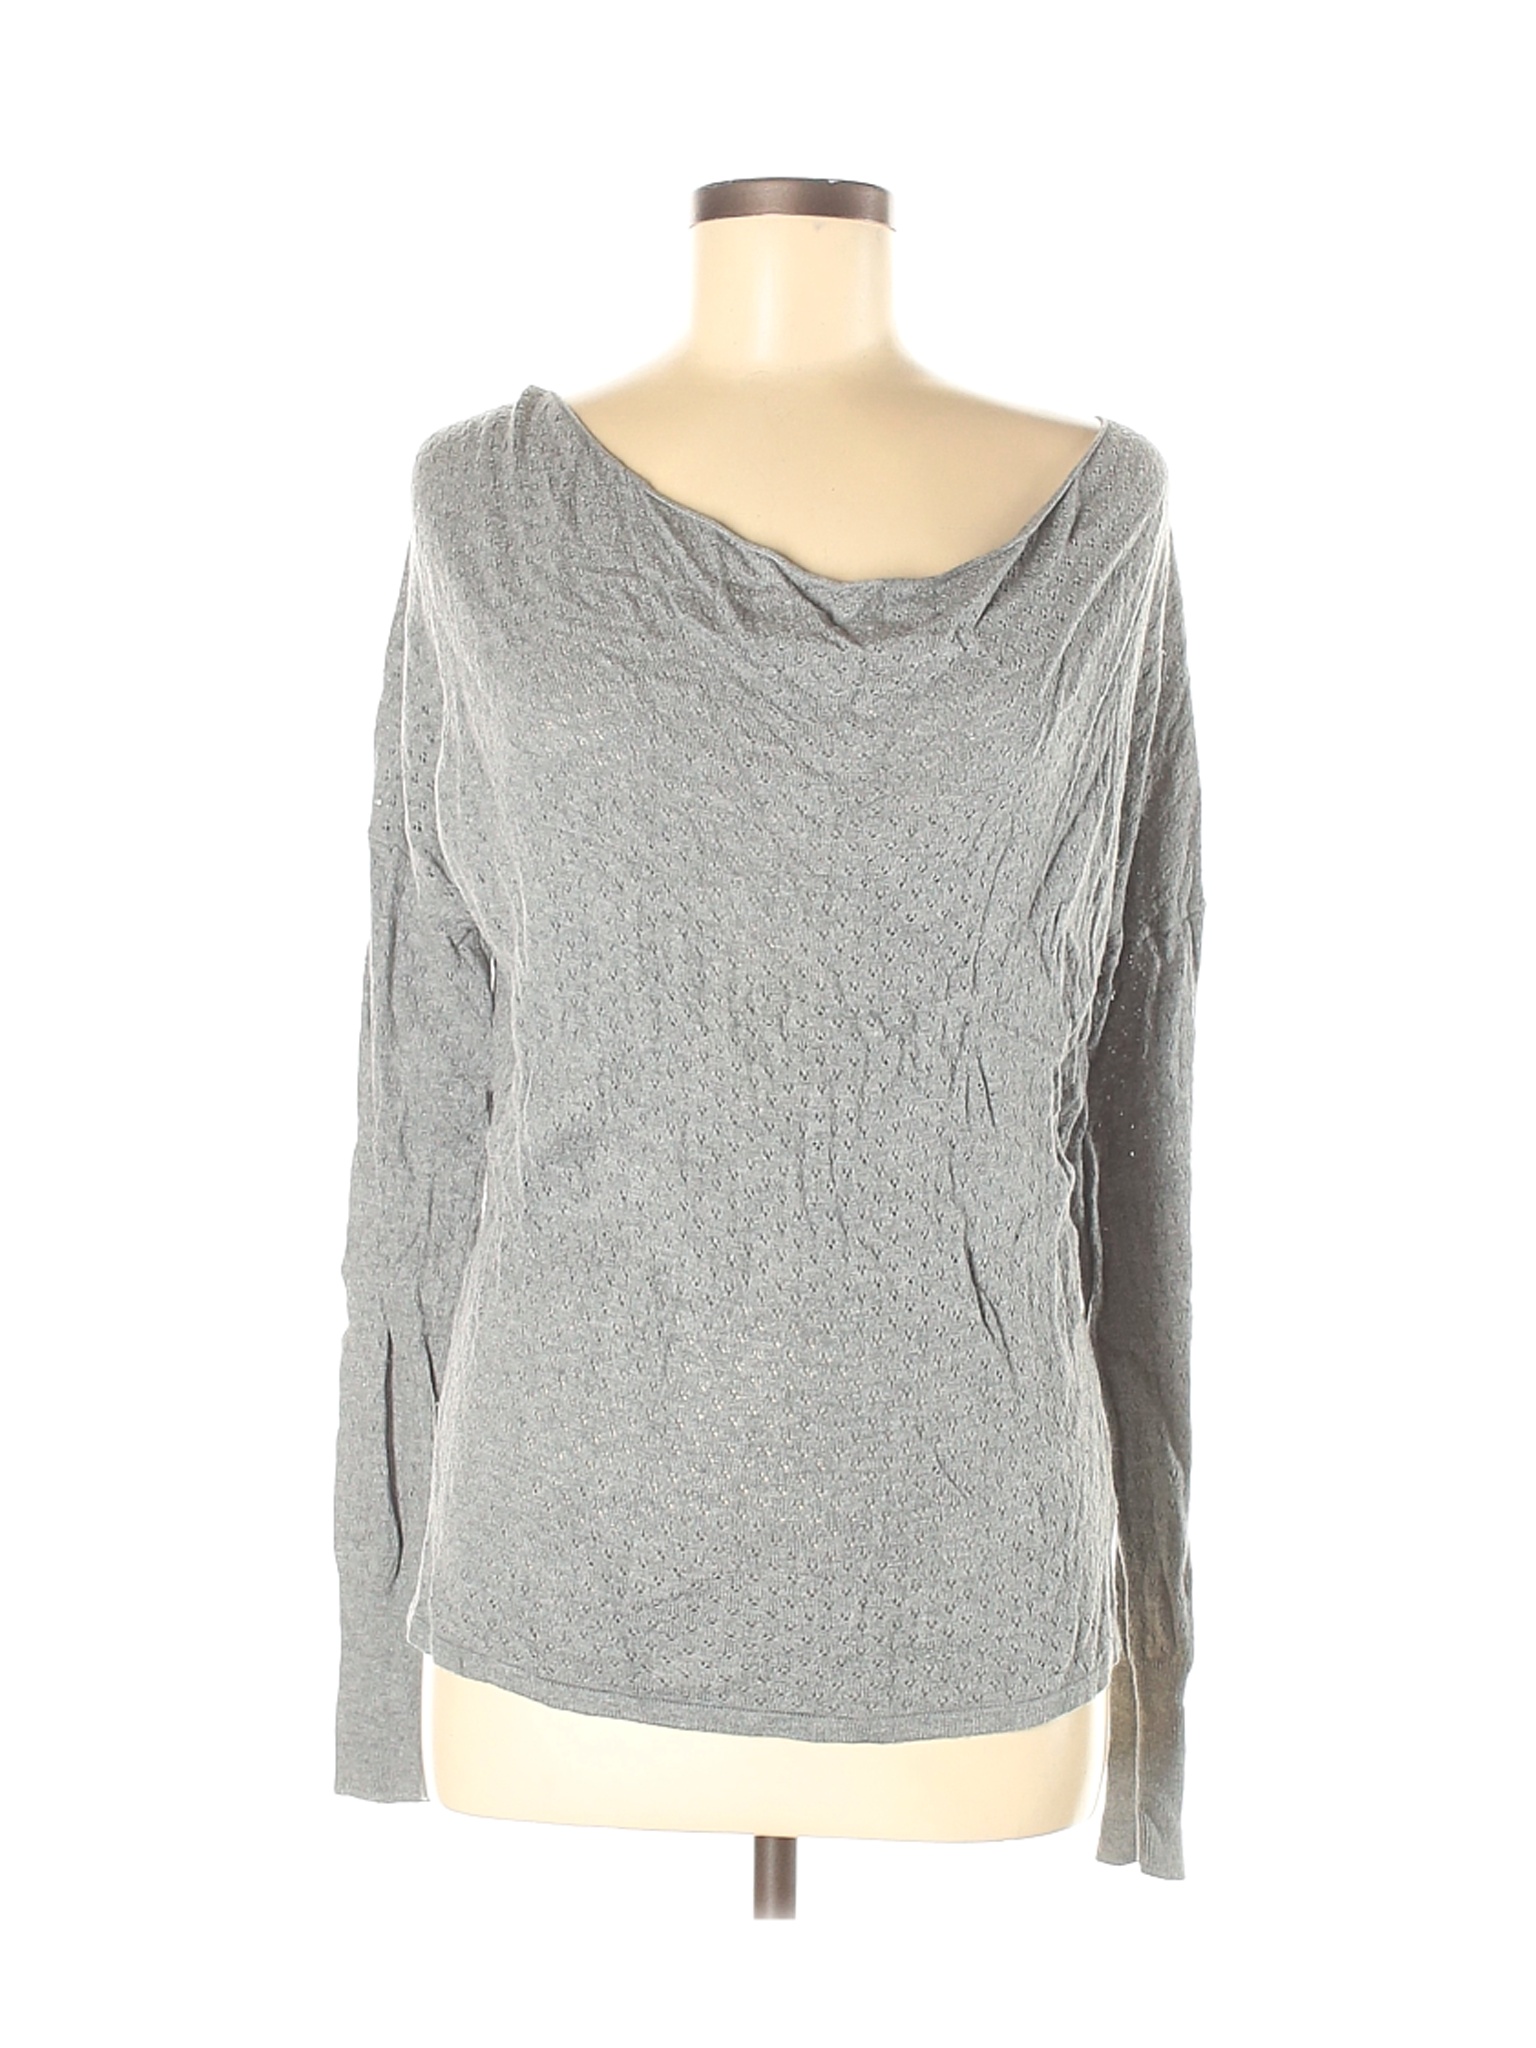 Mossimo Women Gray Pullover Sweater M | eBay